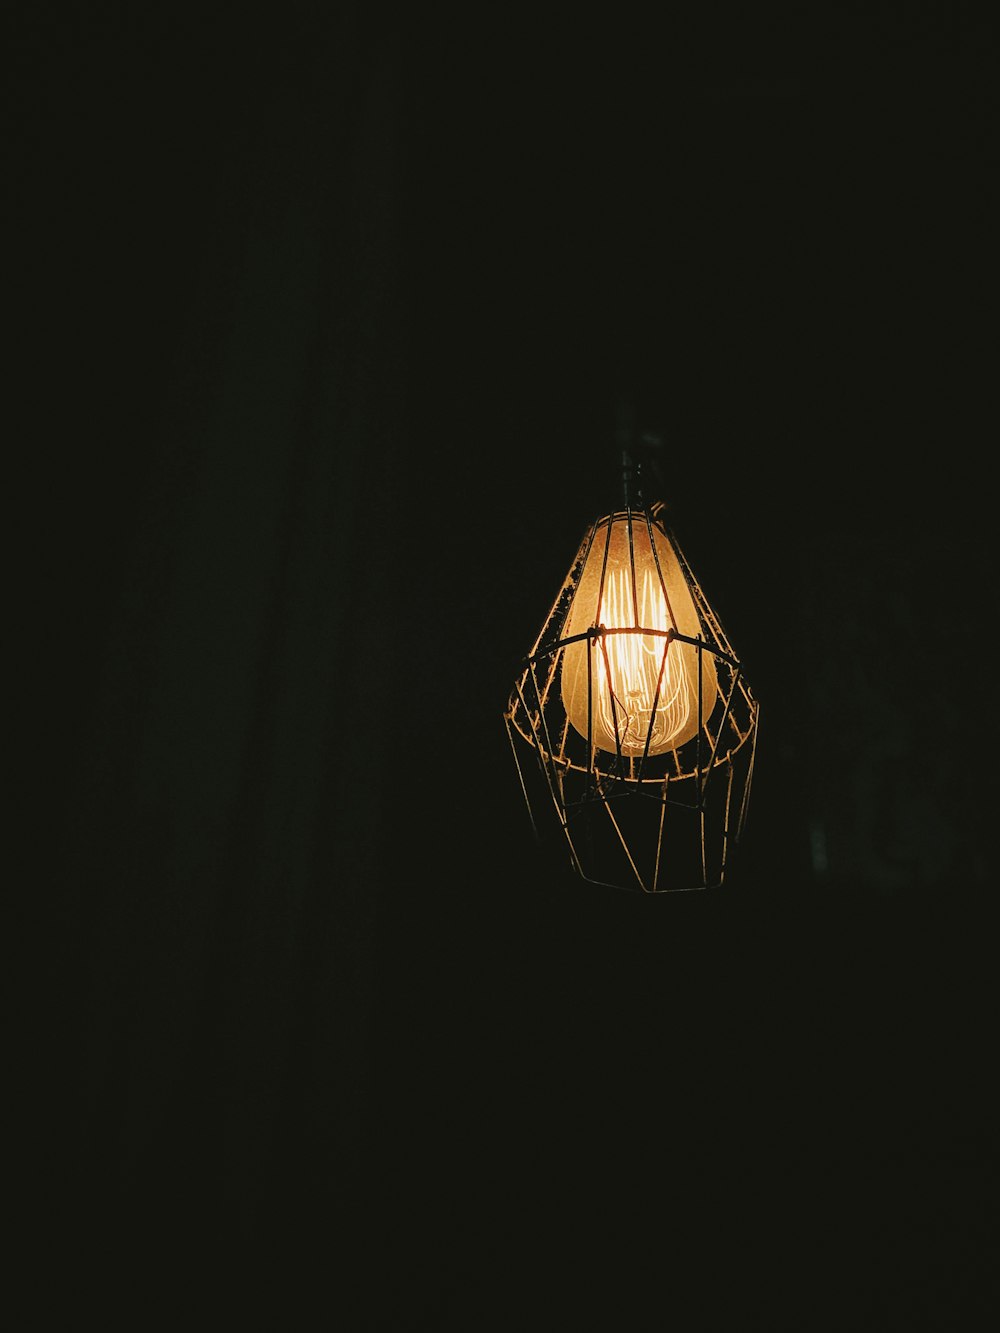 turned-on pendant lamp at dark room